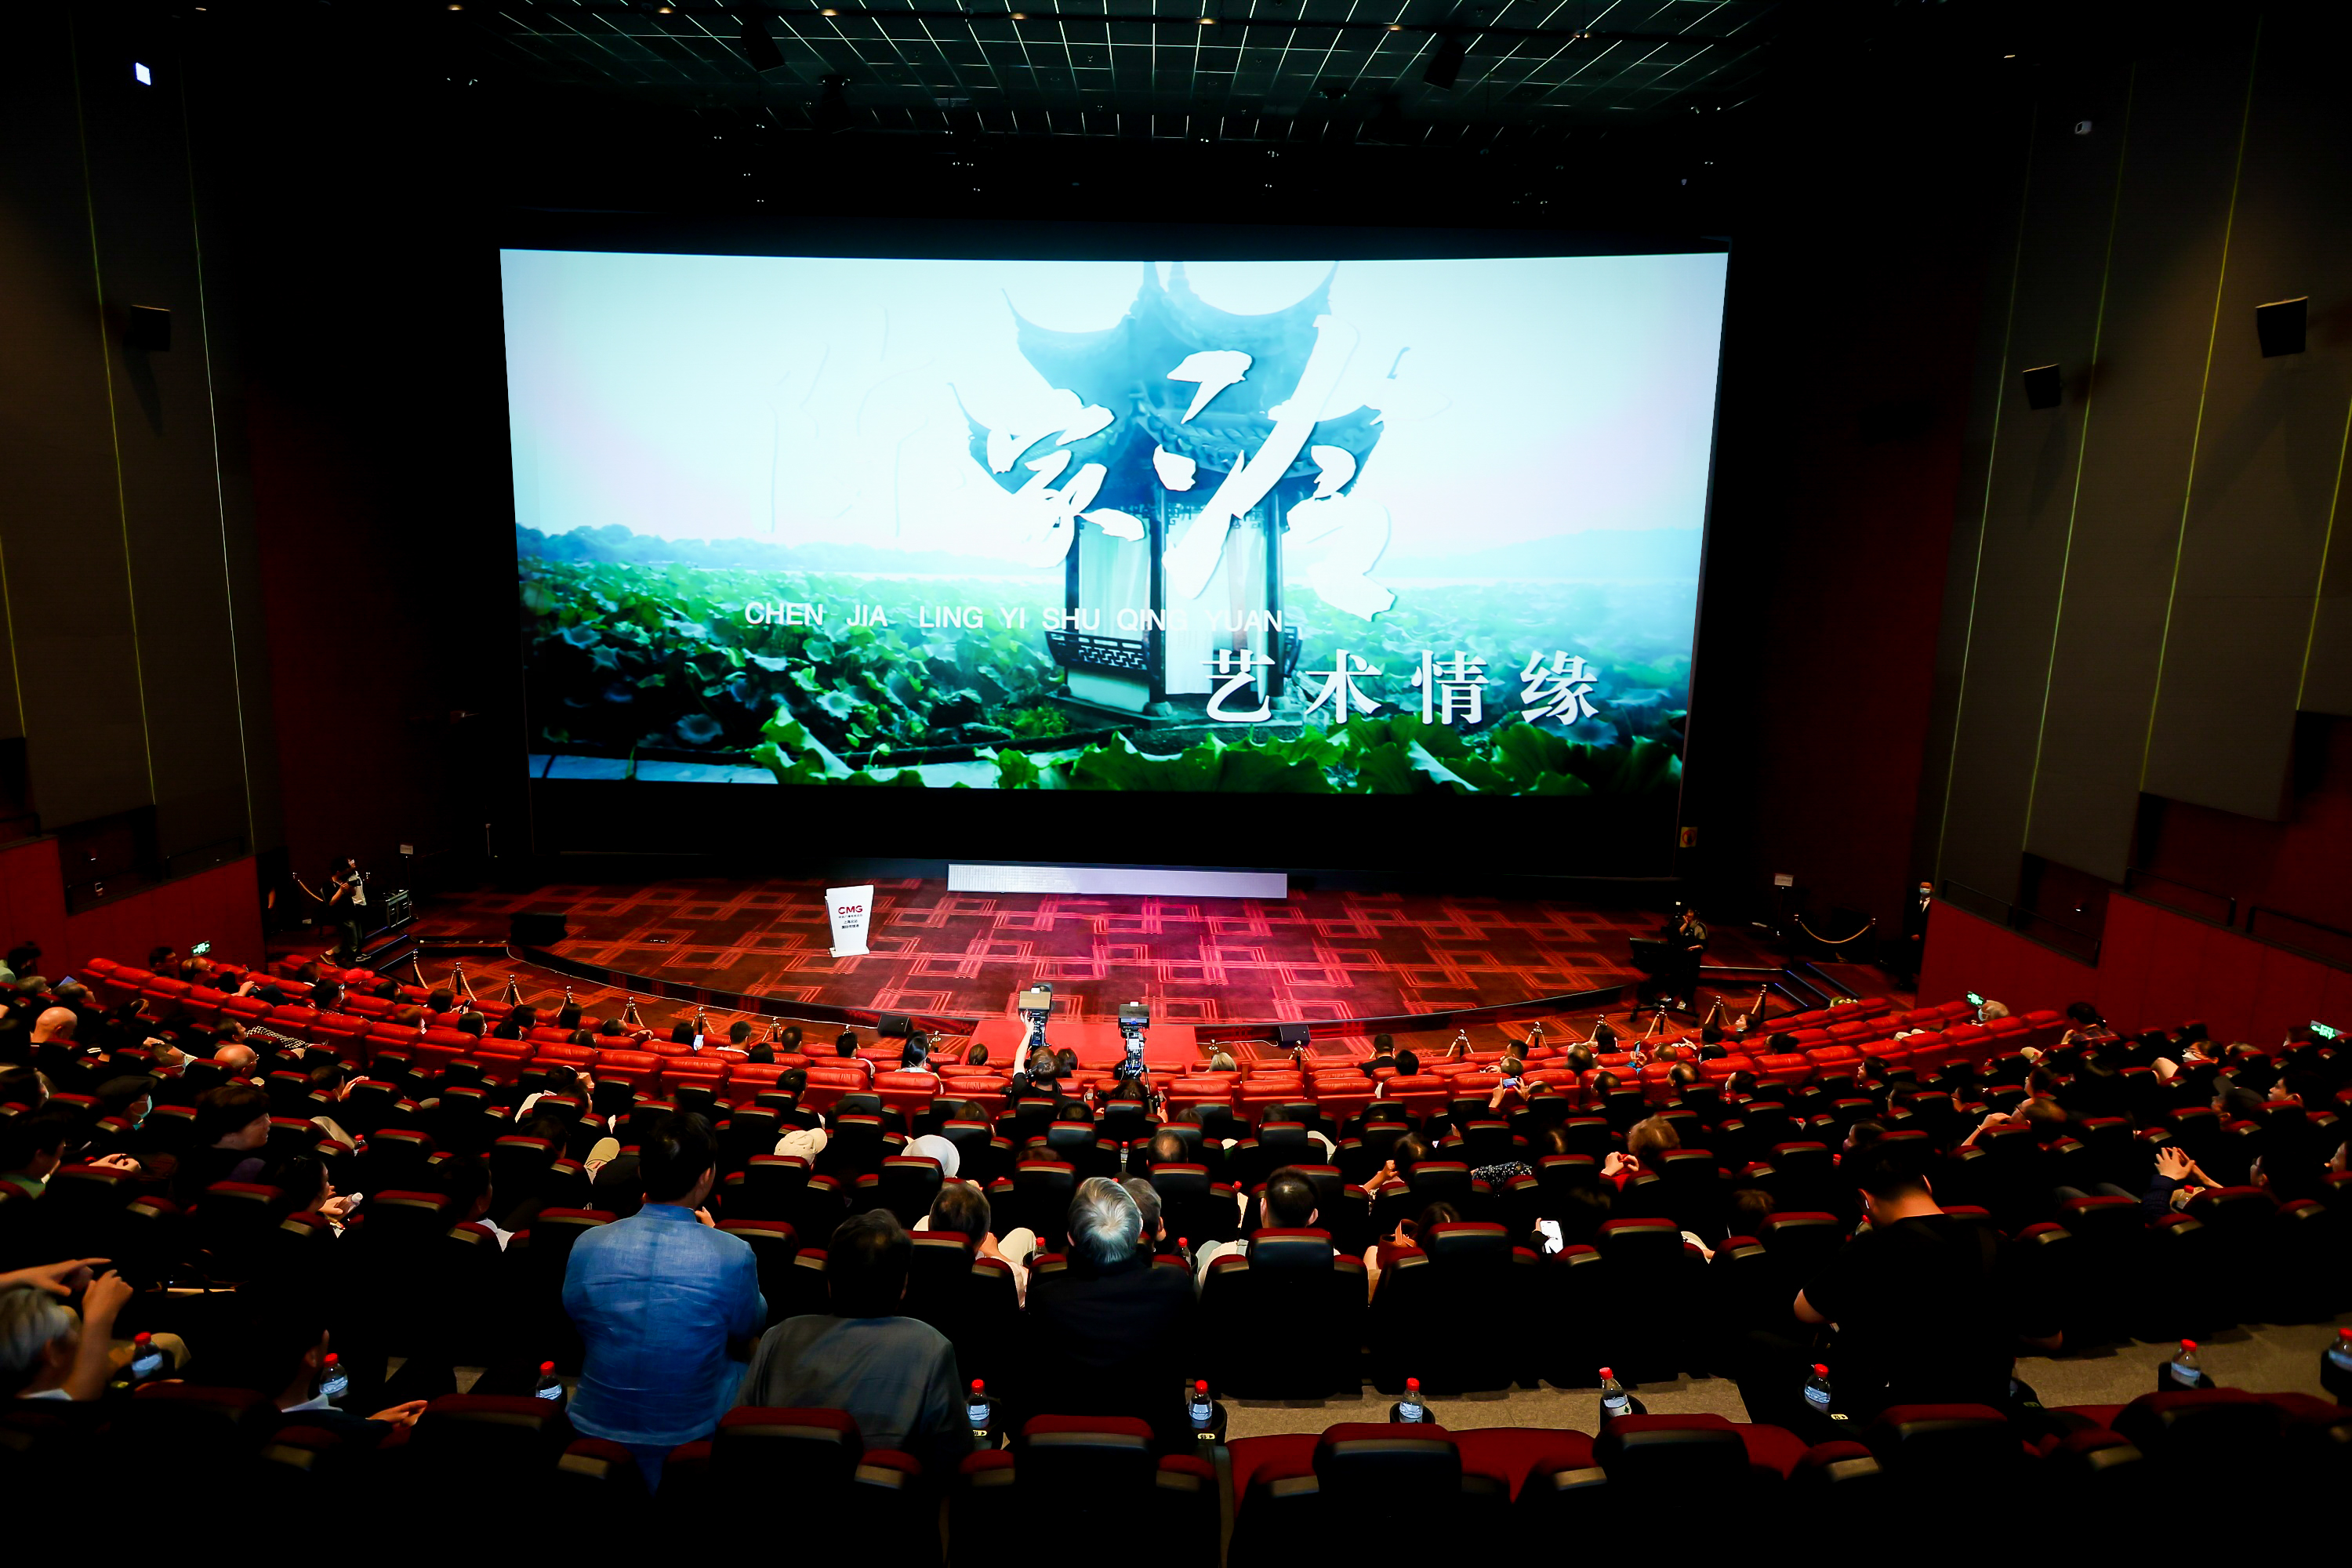 观众在CMG融媒影城CINITY巨幅银幕观看超高清视频《陈家泠艺术情缘》